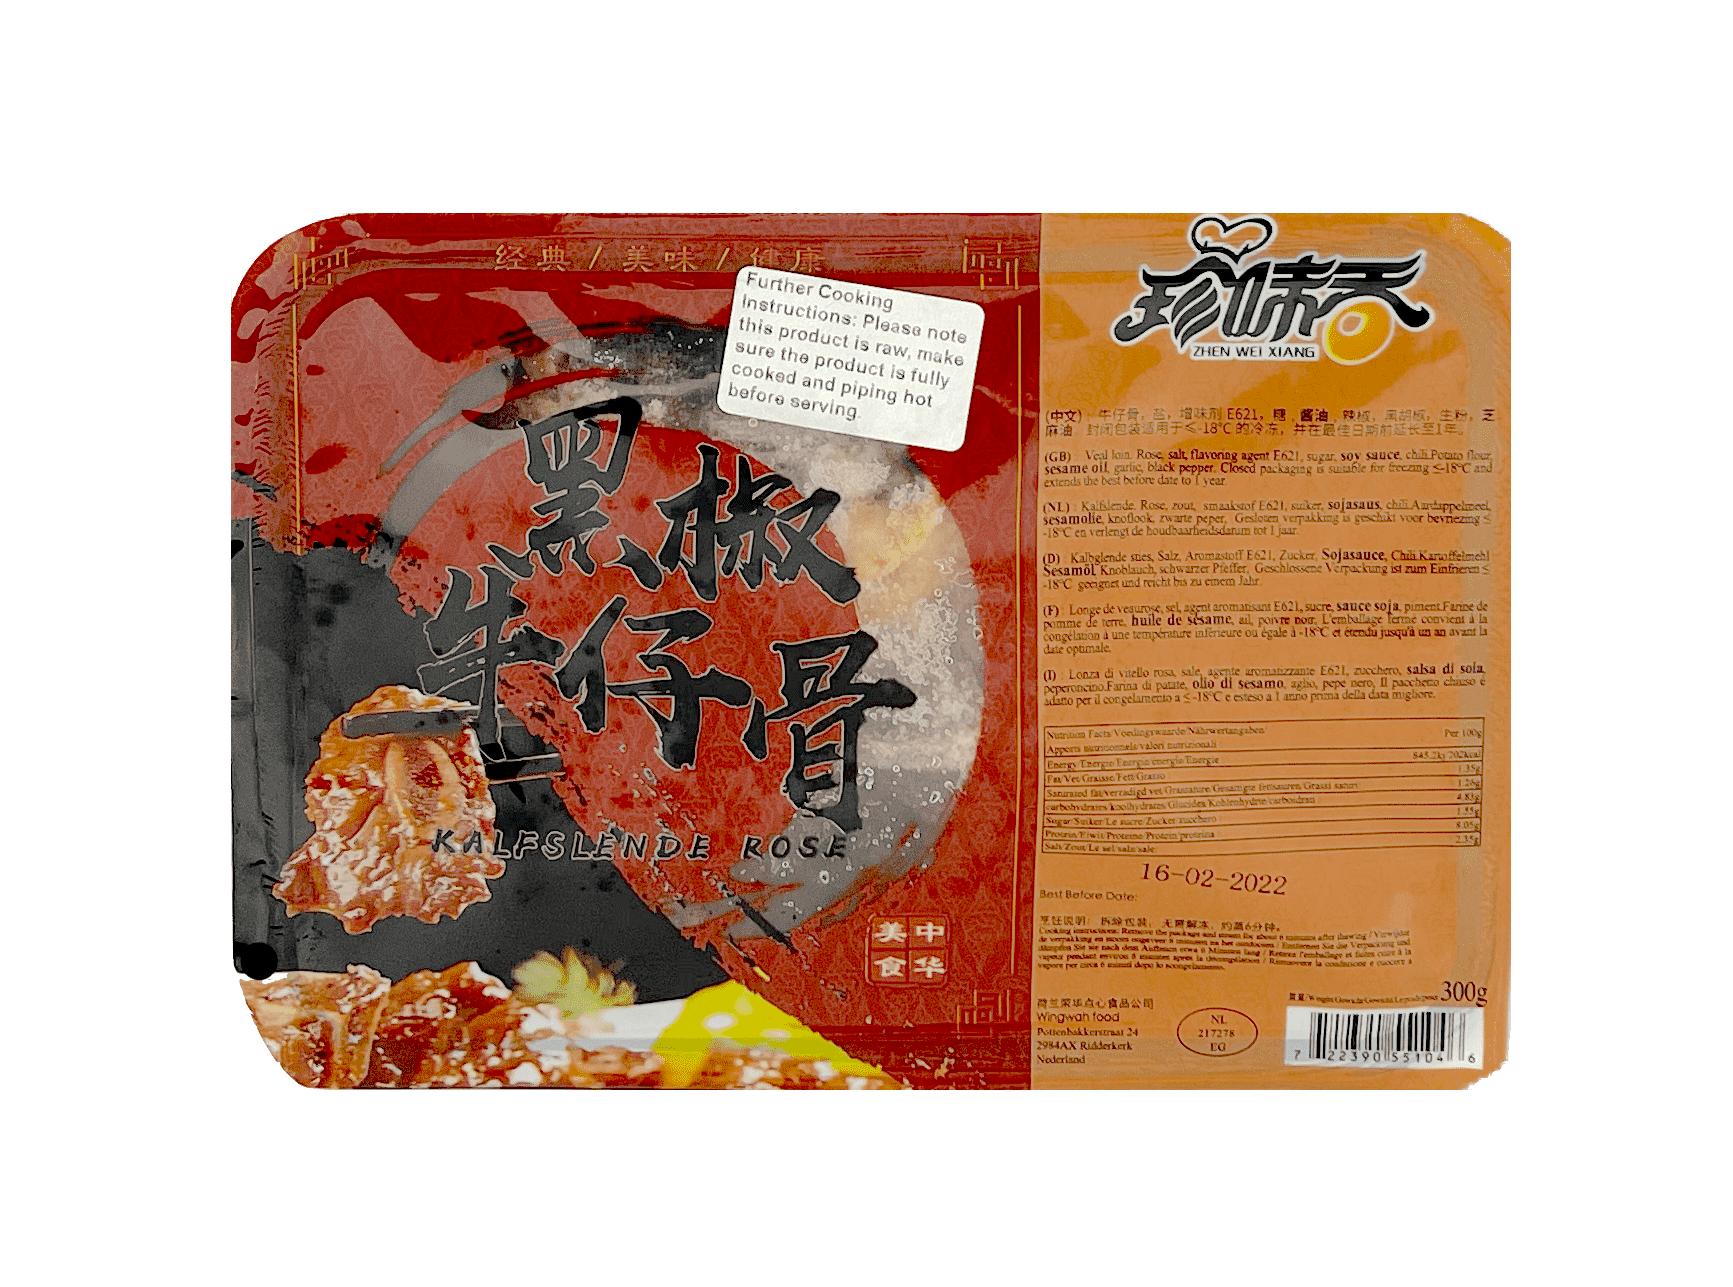 Nötkött Kort Revben Med Svartpeppar (Rå) Fryst 300g Zhen Wei Xiang Kina